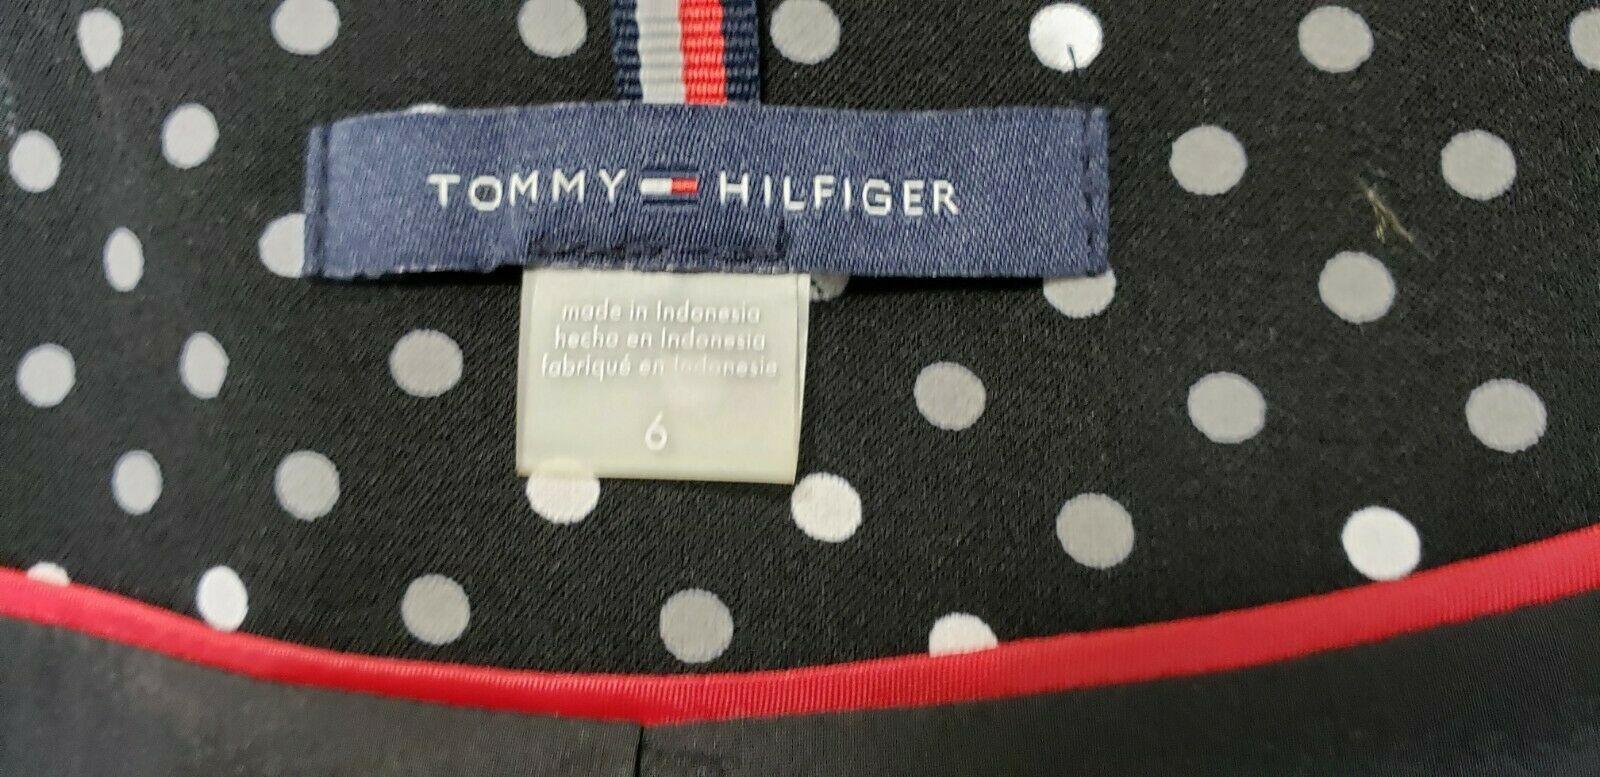 Tommy Hilfiger Polka Dot One-Button Jacket Black Ivory Jacket Blazer 6 - SVNYFancy